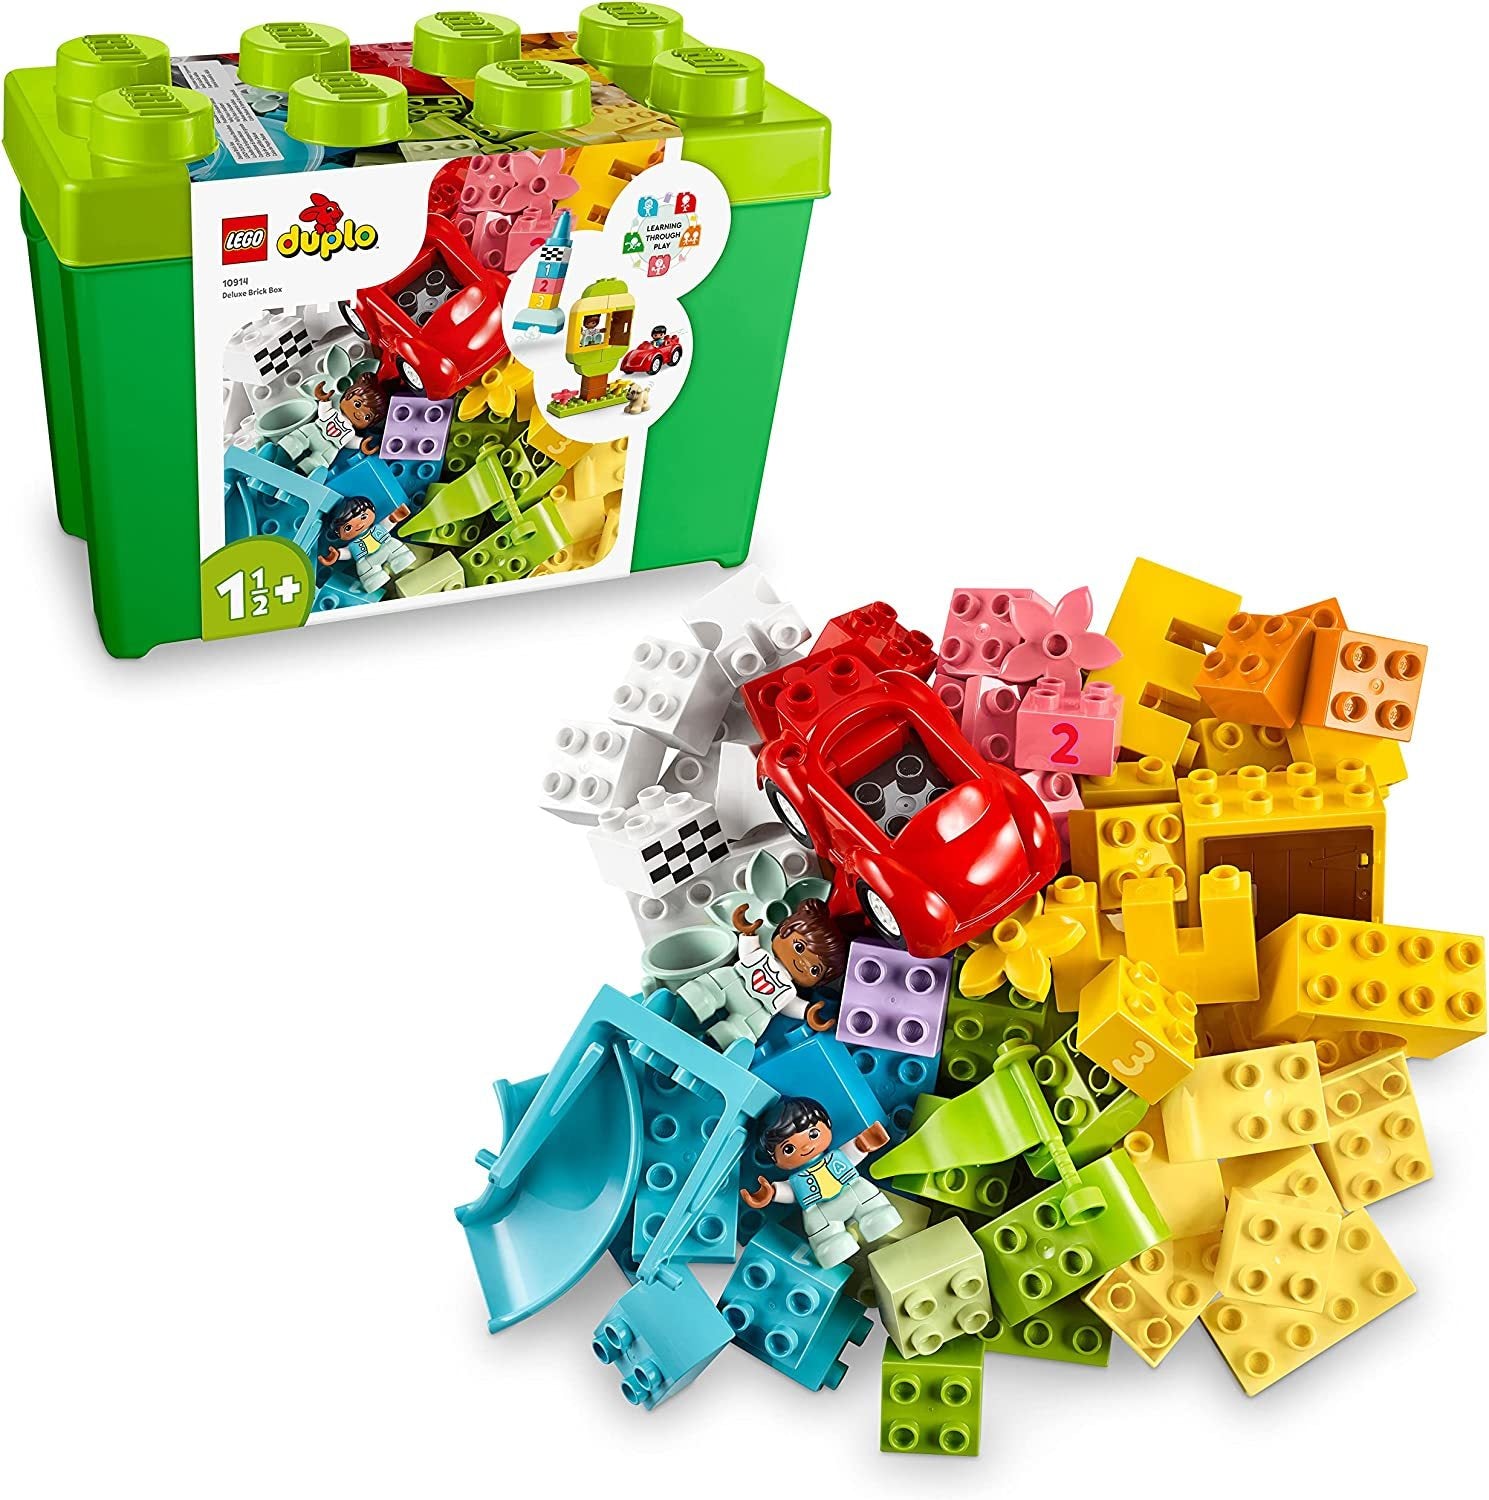 LEGO DUPLO: Deluxe Brick Box - (10914)